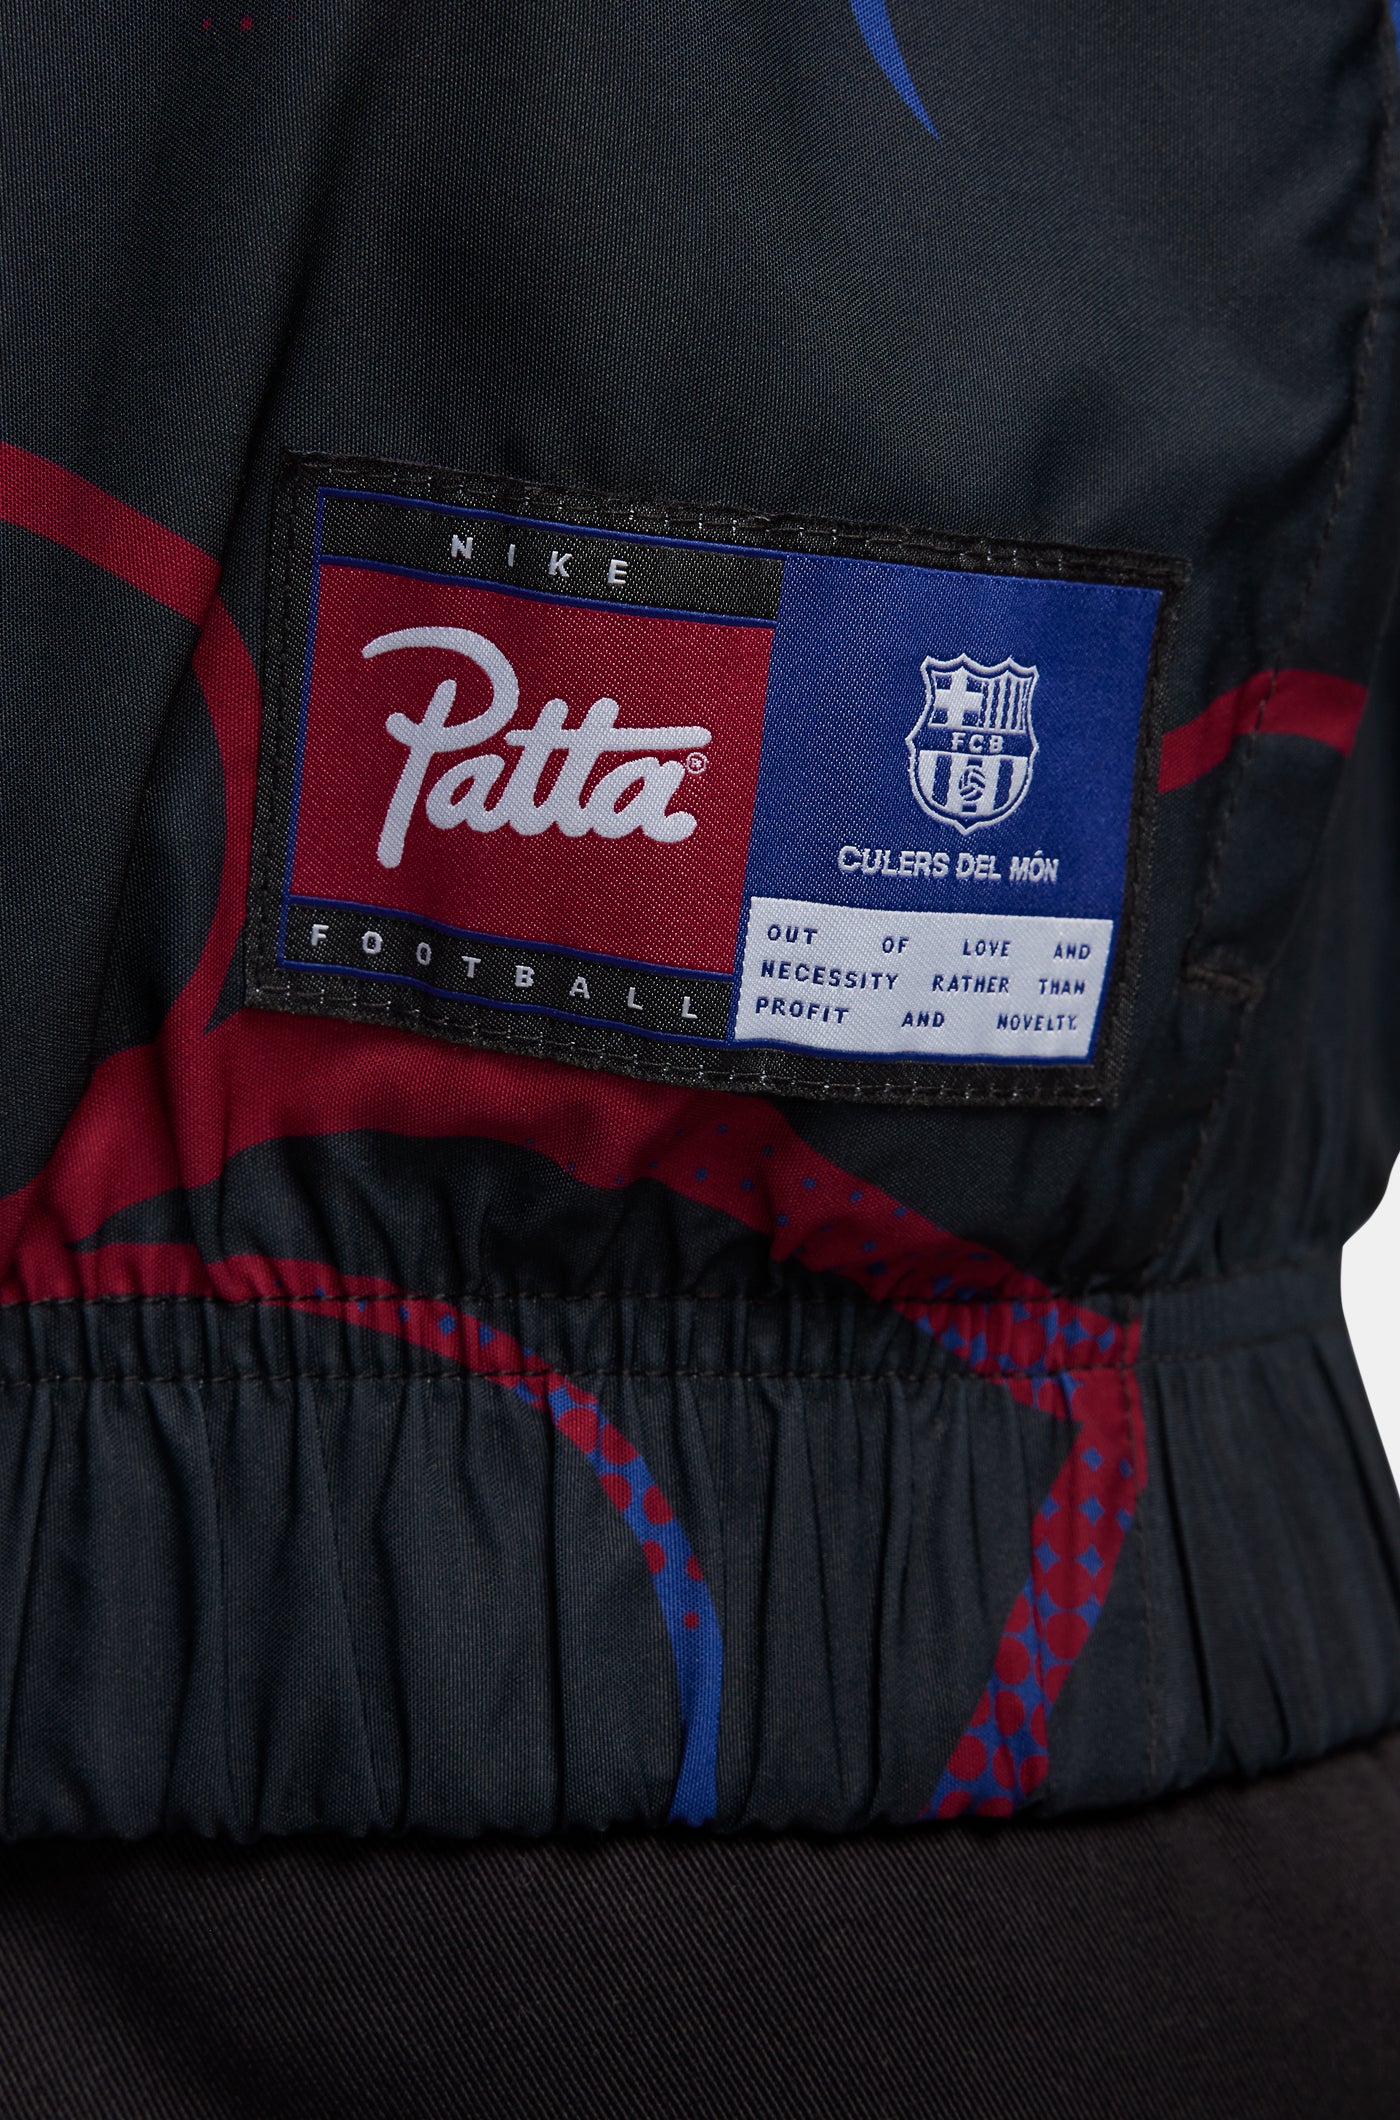 PATTA - FCB Culers del Món Track Jacket